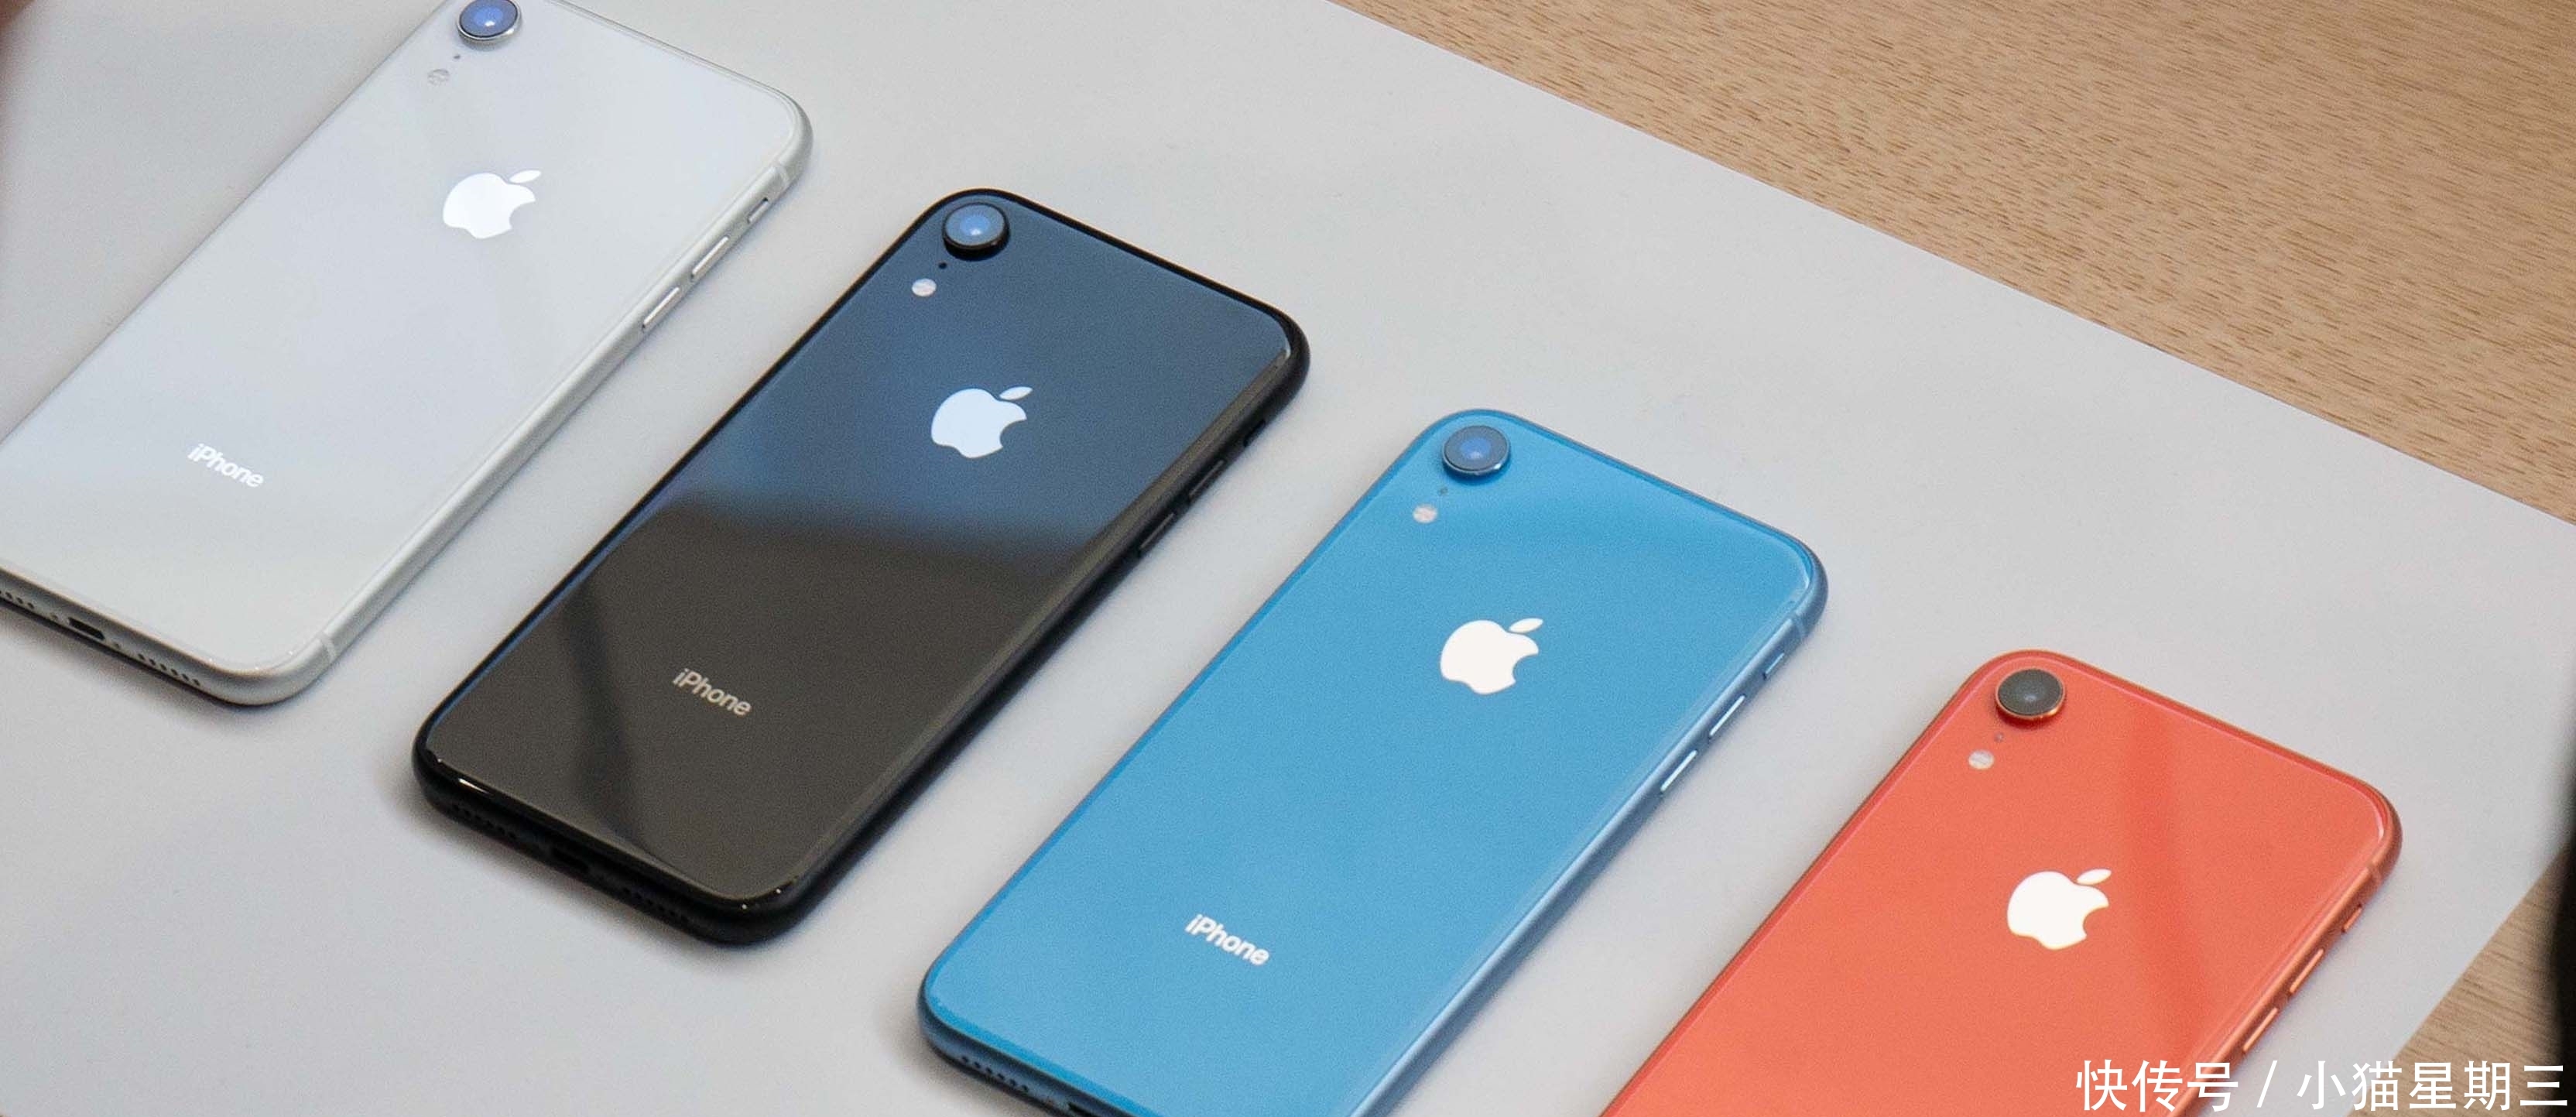 iPhone X狂降2200块成为新冰点,买iPhone XR